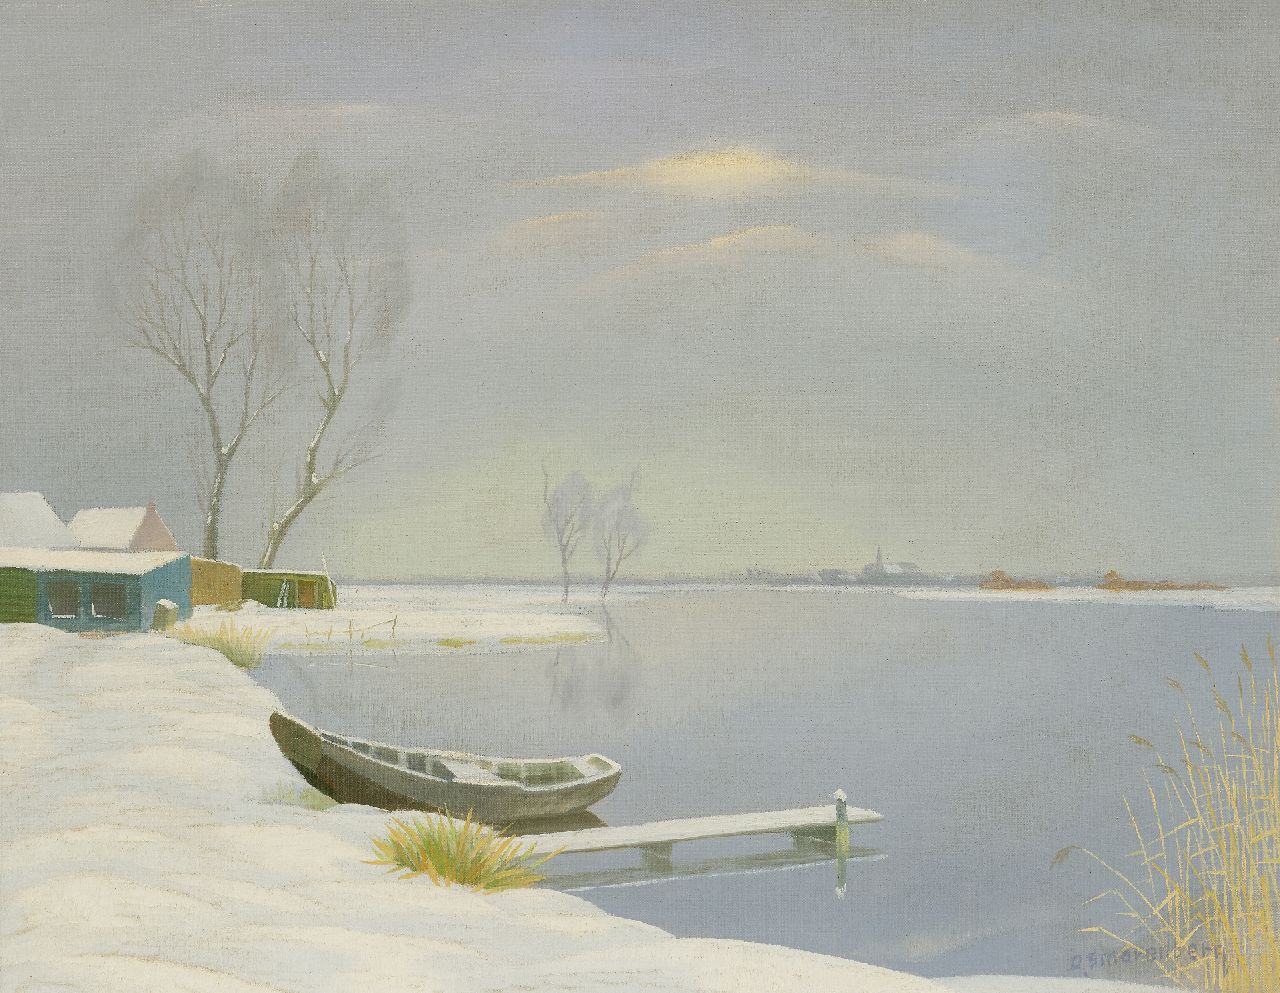 Smorenberg D.  | Dirk Smorenberg, The Loosdrechtse Plassen in the winter, oil on canvas 41.3 x 53.4 cm, signed l.r.